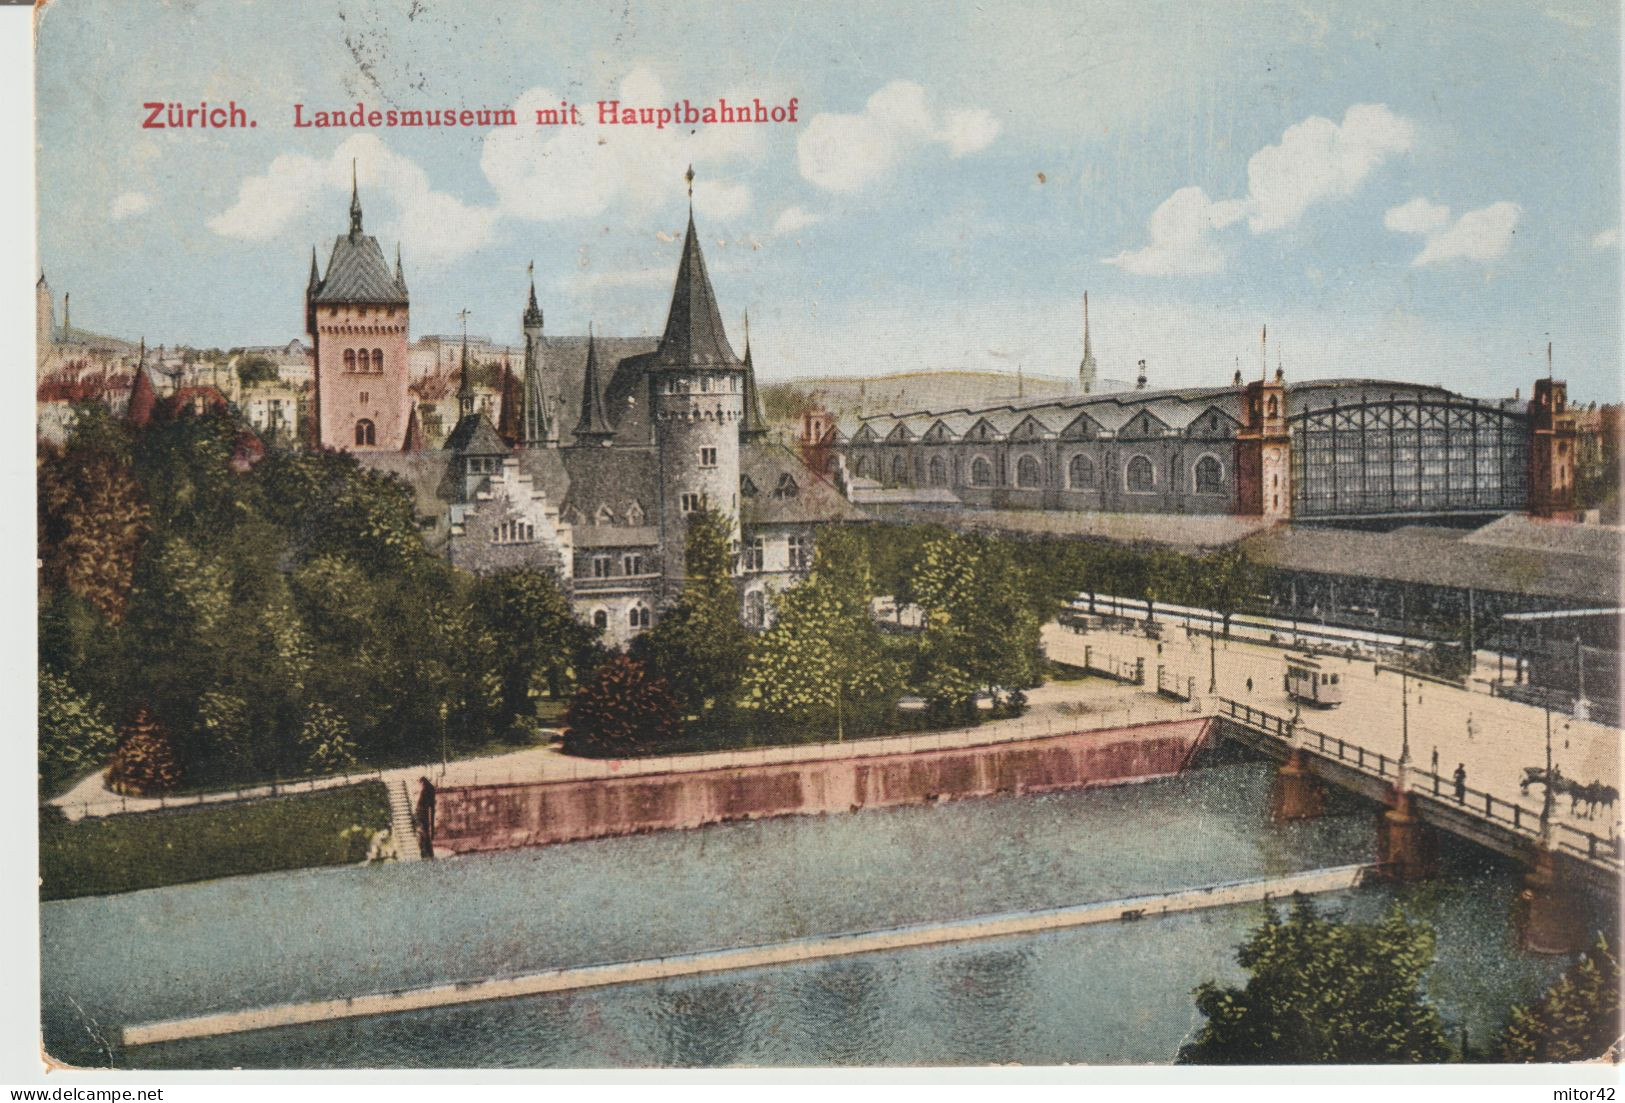 11*-Tassate-Segnatasse-Tassata Da Estero:Svizzera X L' Italia: Firenze-Cartolina Di Zurigo-1921 - Postage Due